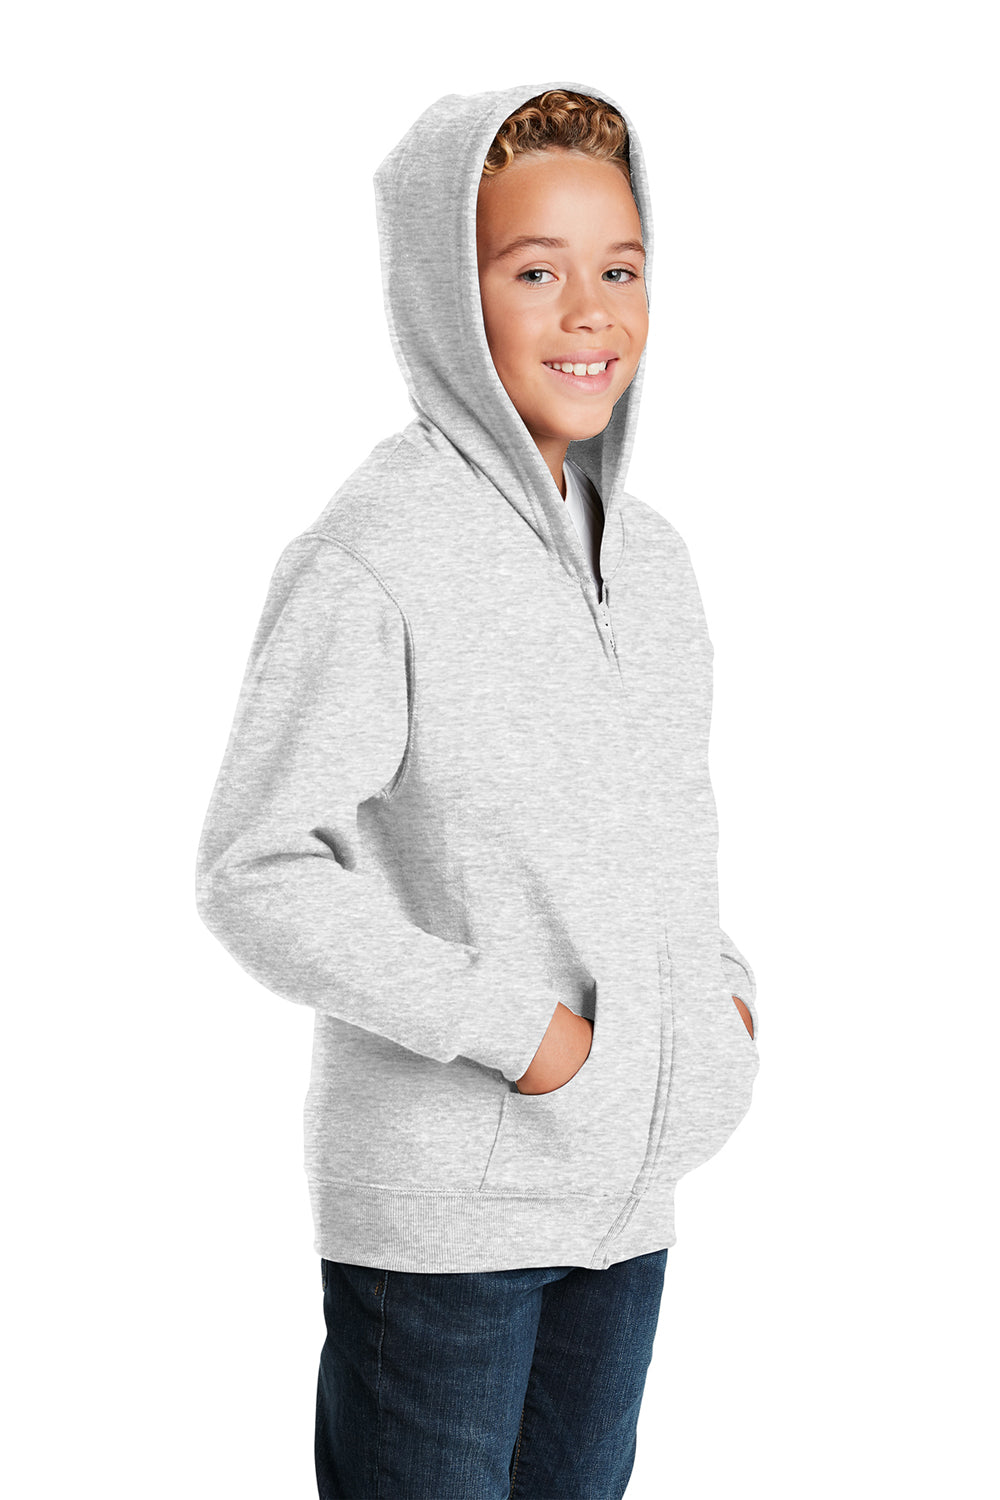 Jerzees 993B/993BR Youth NuBlend Fleece Full Zip Hooded Sweatshirt Hoodie Ash Grey 3Q